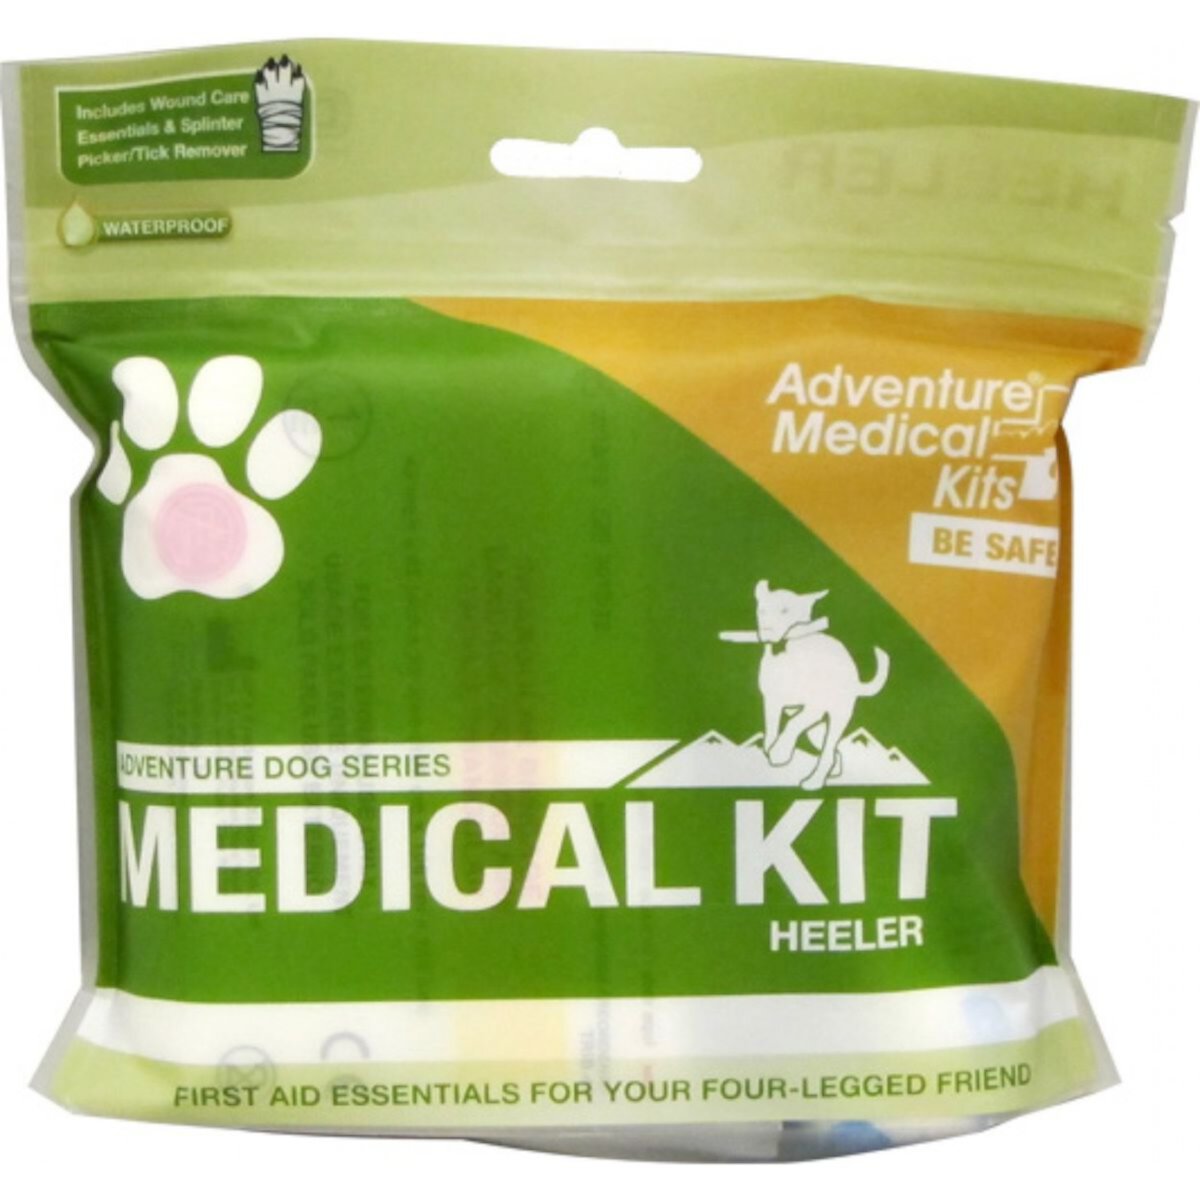 Медицинская аптечка для приключенческих собак серии Adventure Dog Adventure Medical